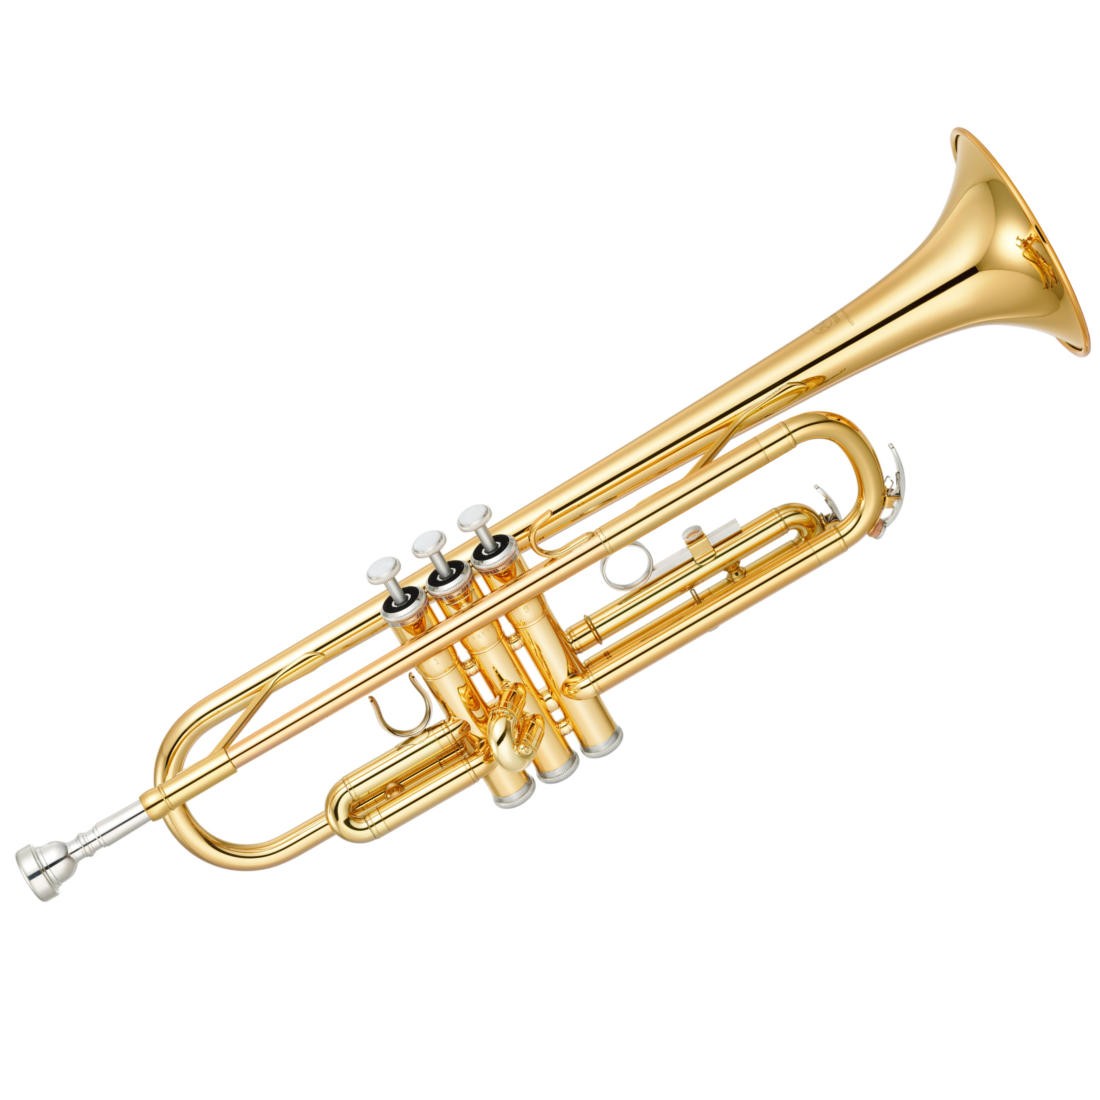 Yamaha YTR-2330 - труба Bb стандартная модель, средняя, yellow brass, лак - золото